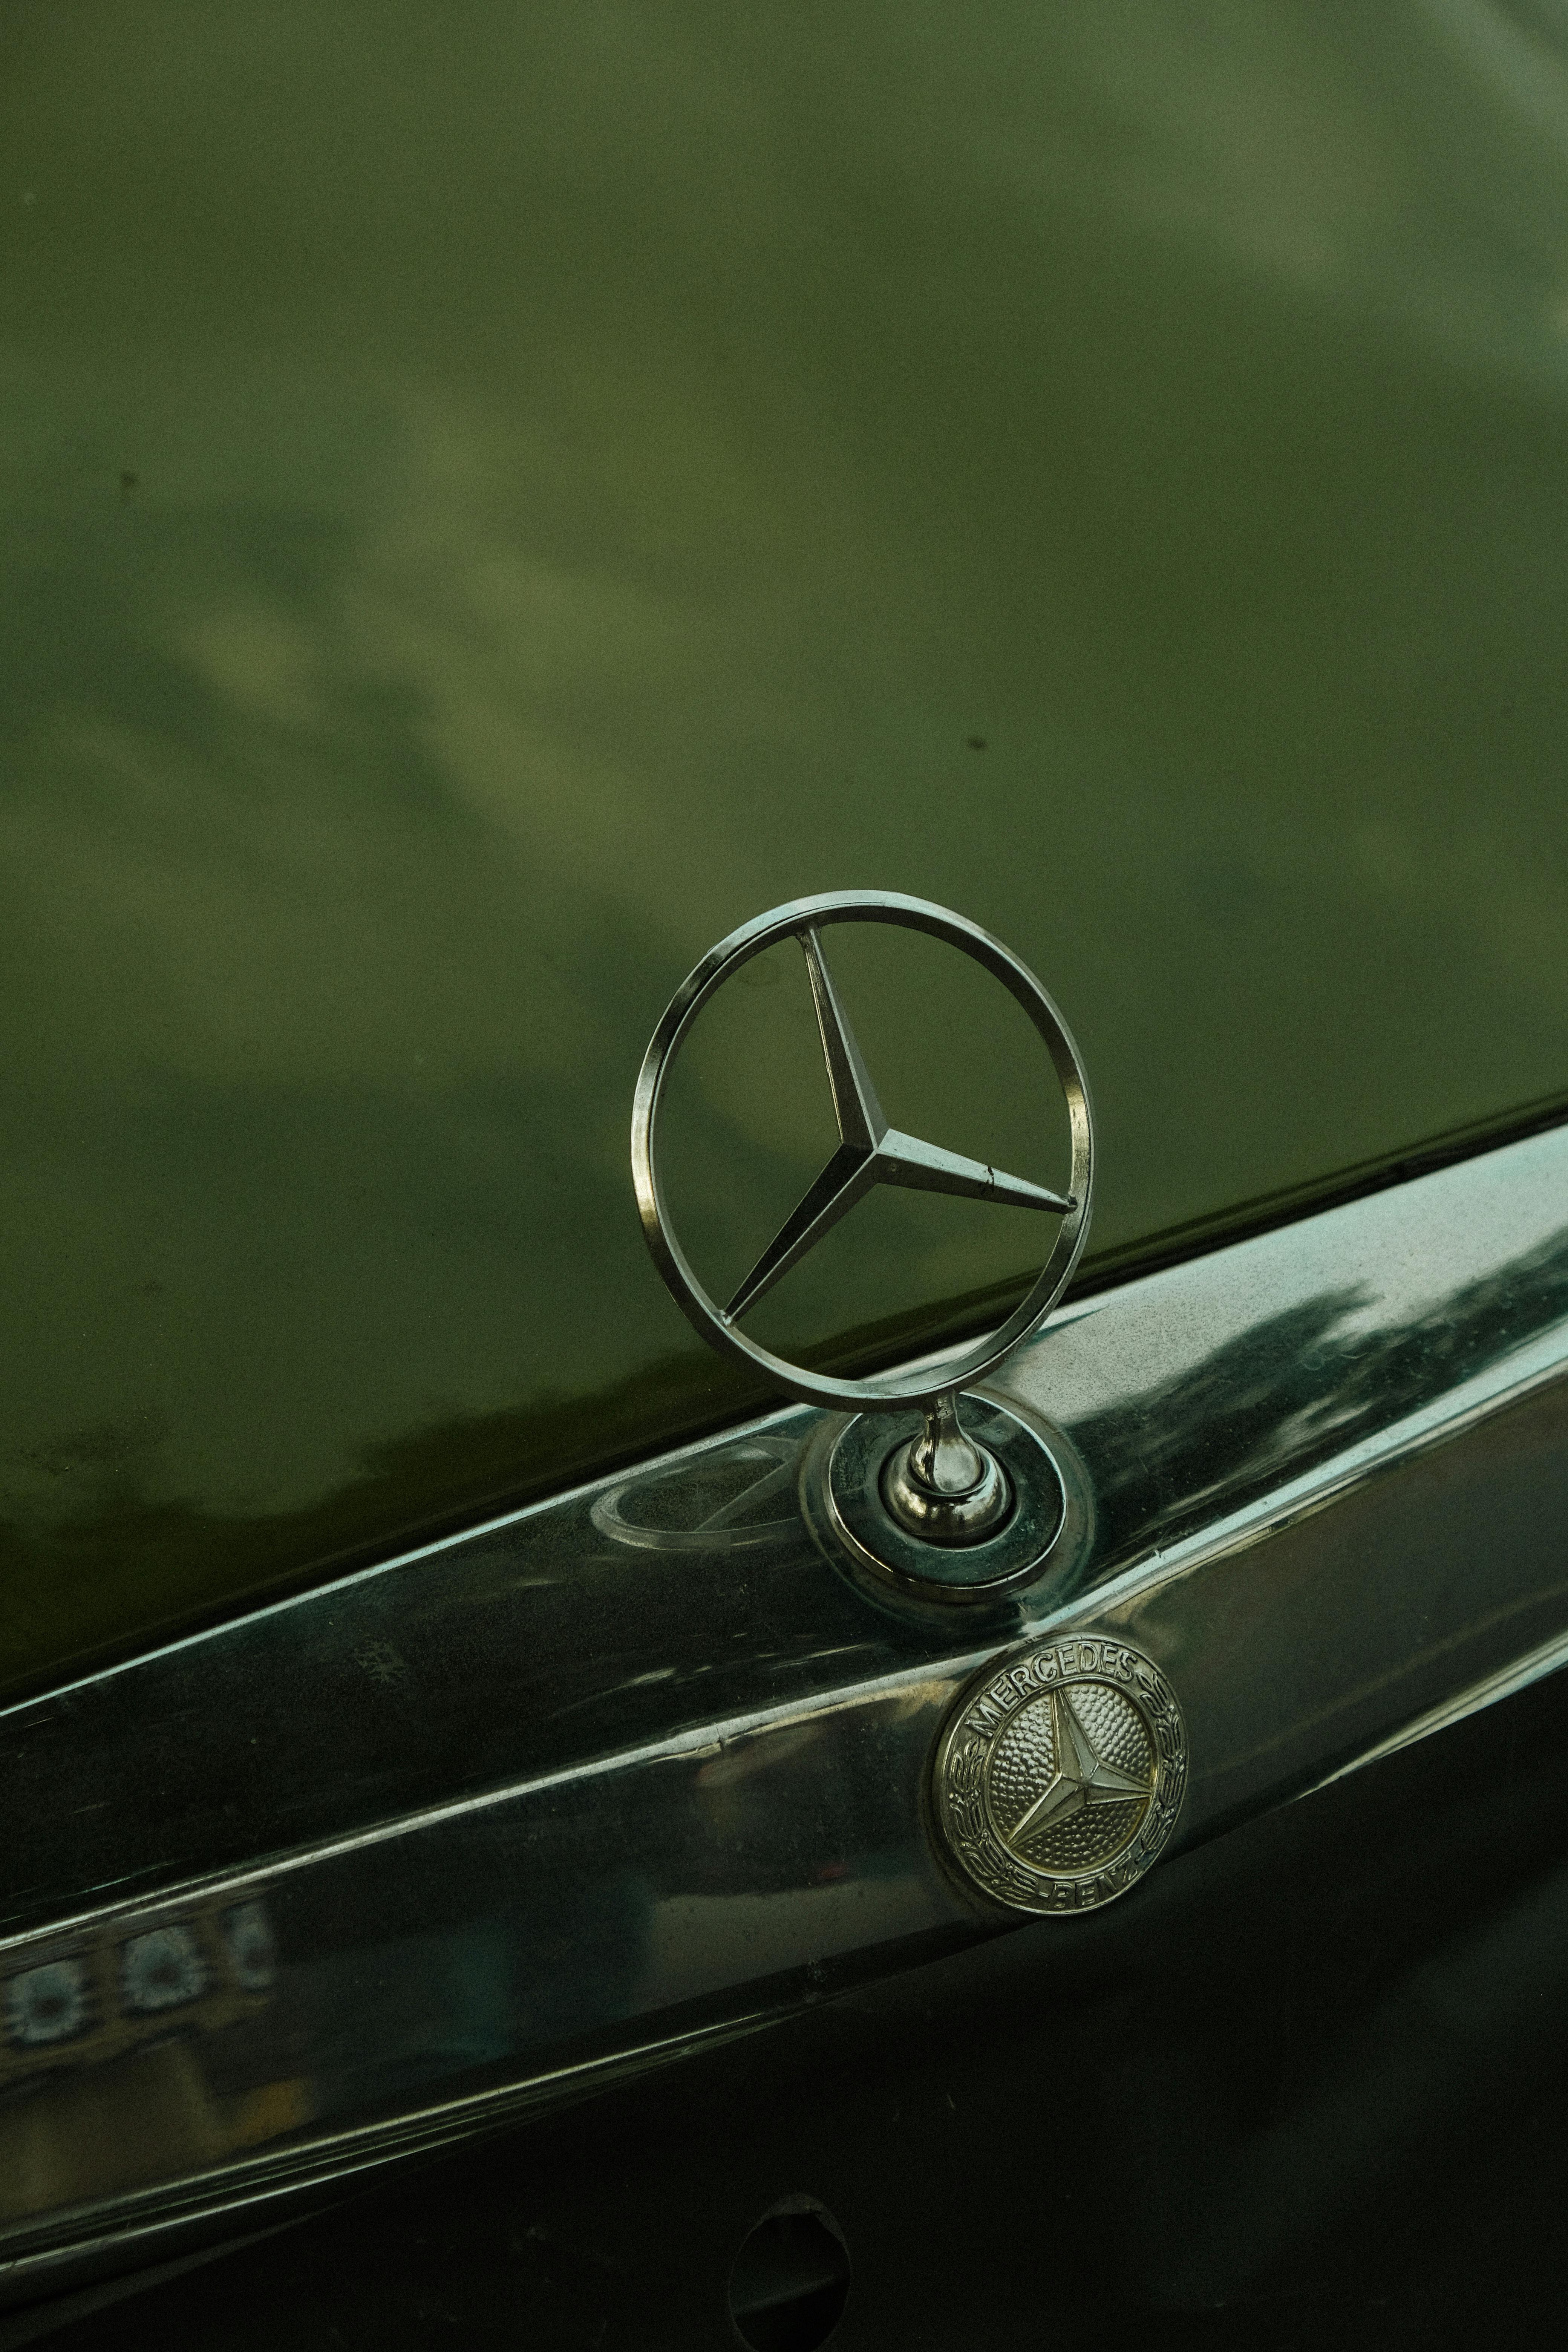 Mercedes Benz Logo Thương Hiệu - Ảnh miễn phí trên Pixabay - Pixabay